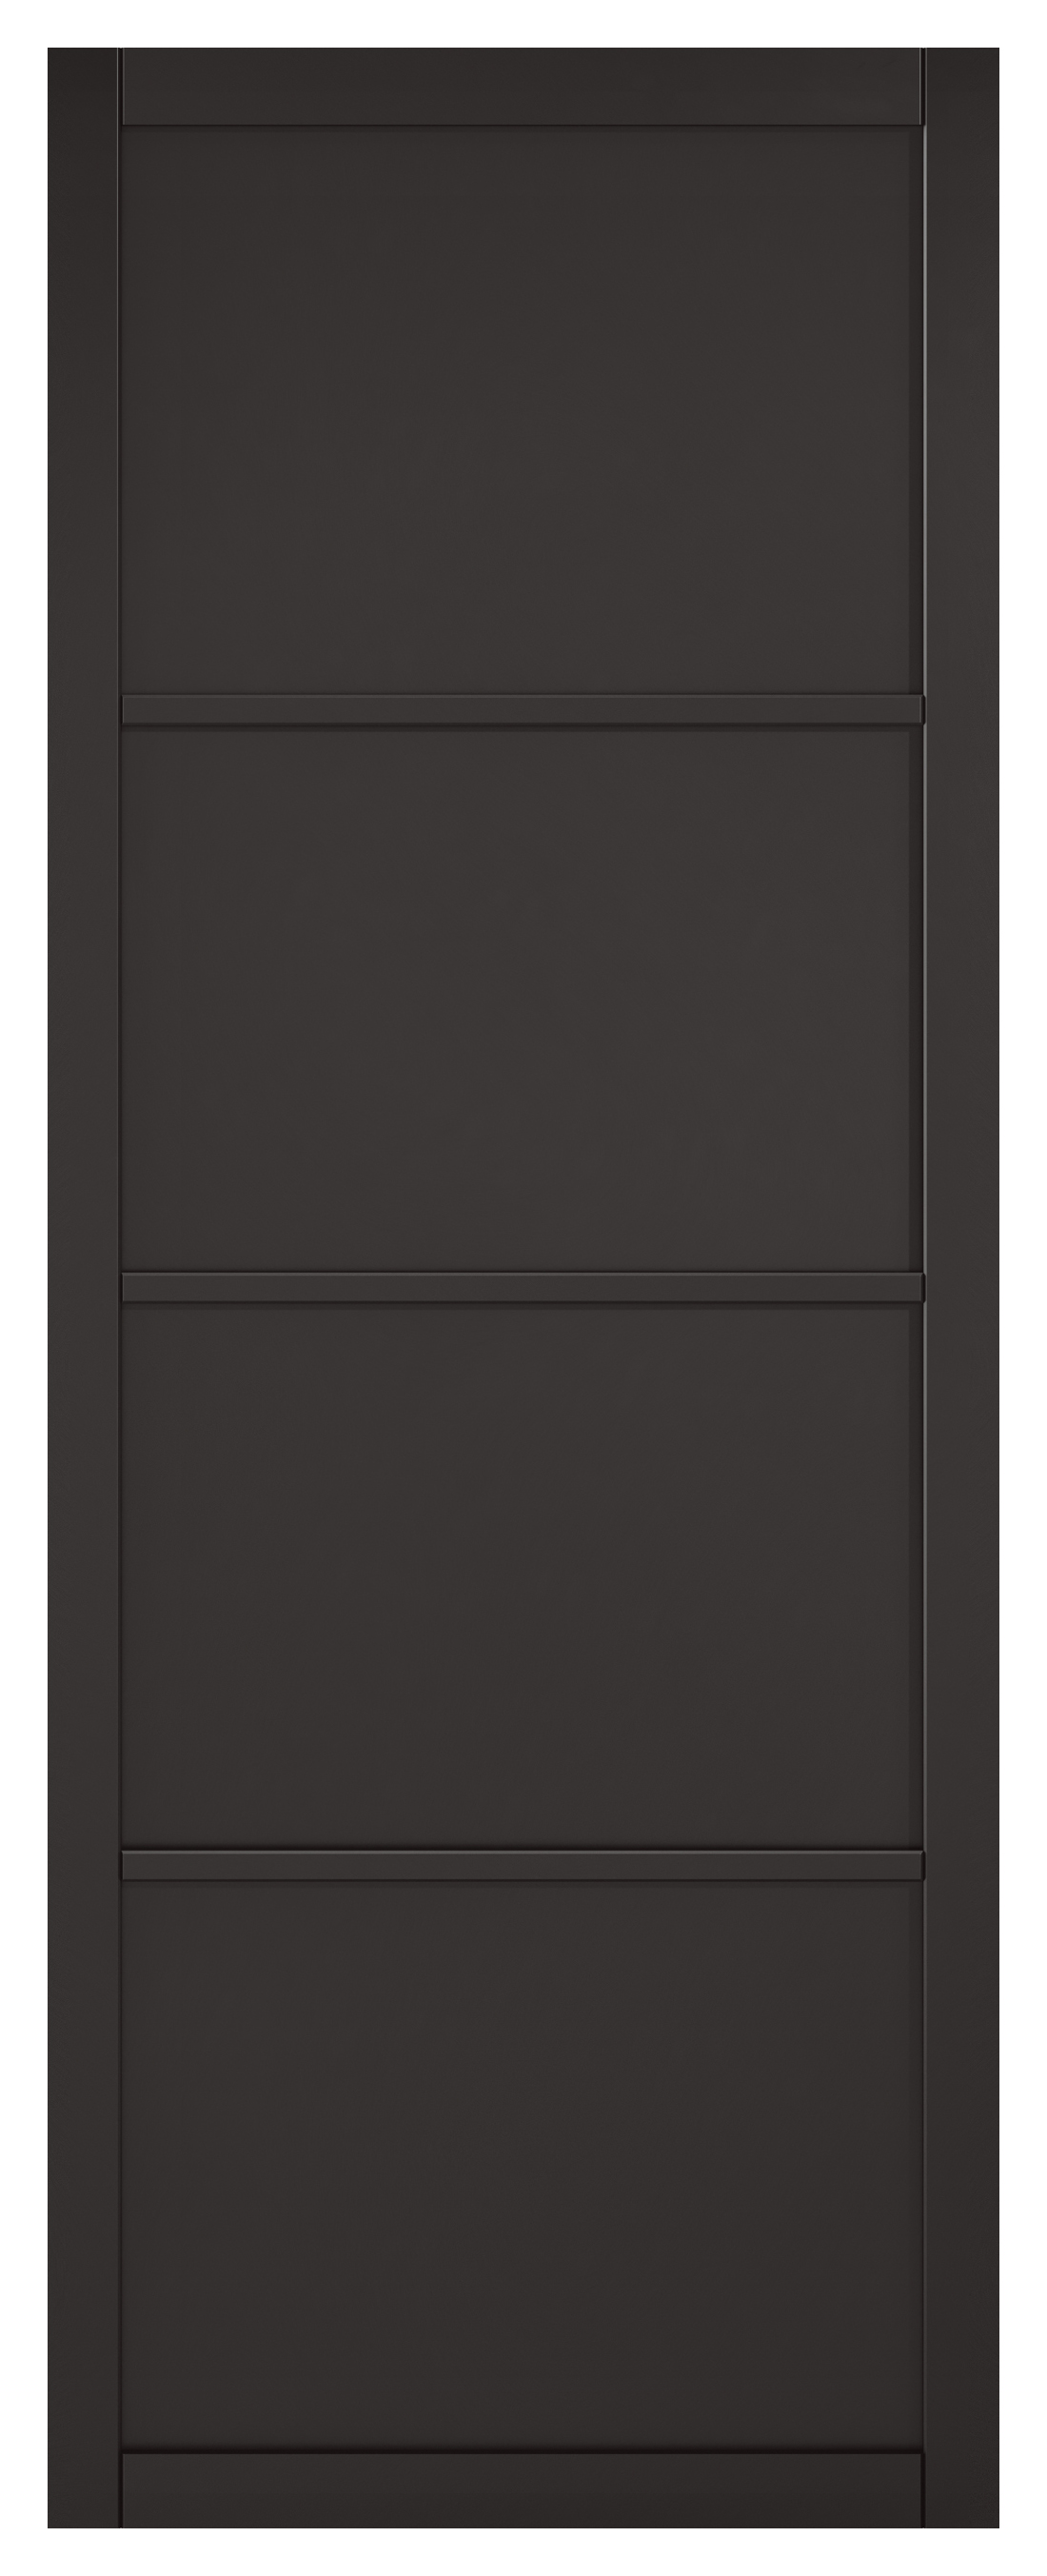 Image of LPD Internal Soho 4 Panel Primed Black Solid Core Door - 826 x 2040mm